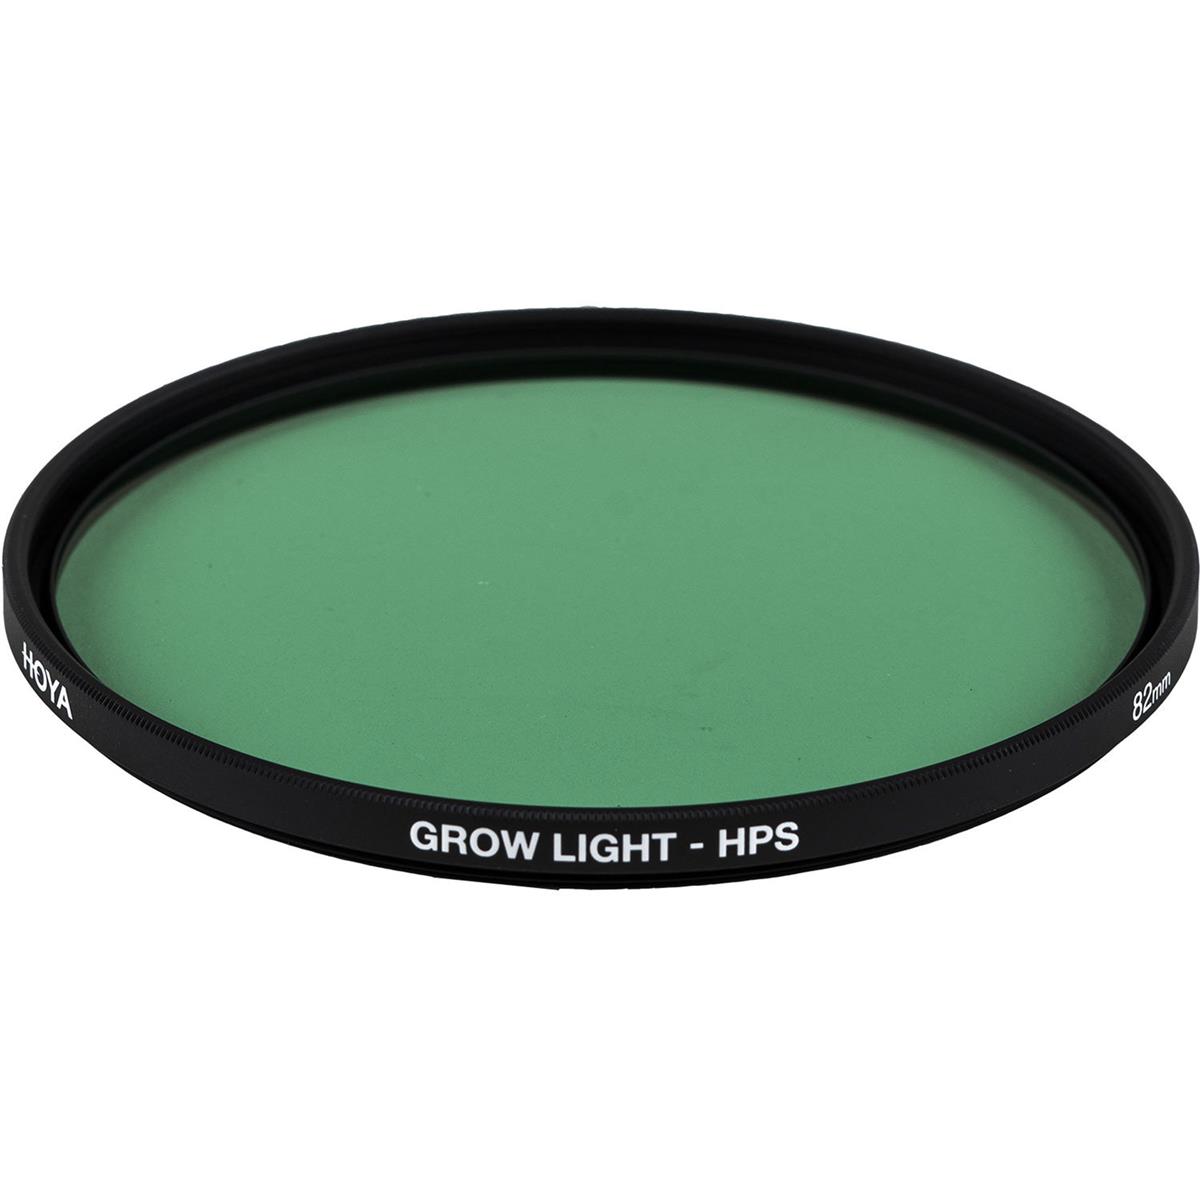 Image of Hoya 82mm Grow Light HPS Filter Kit